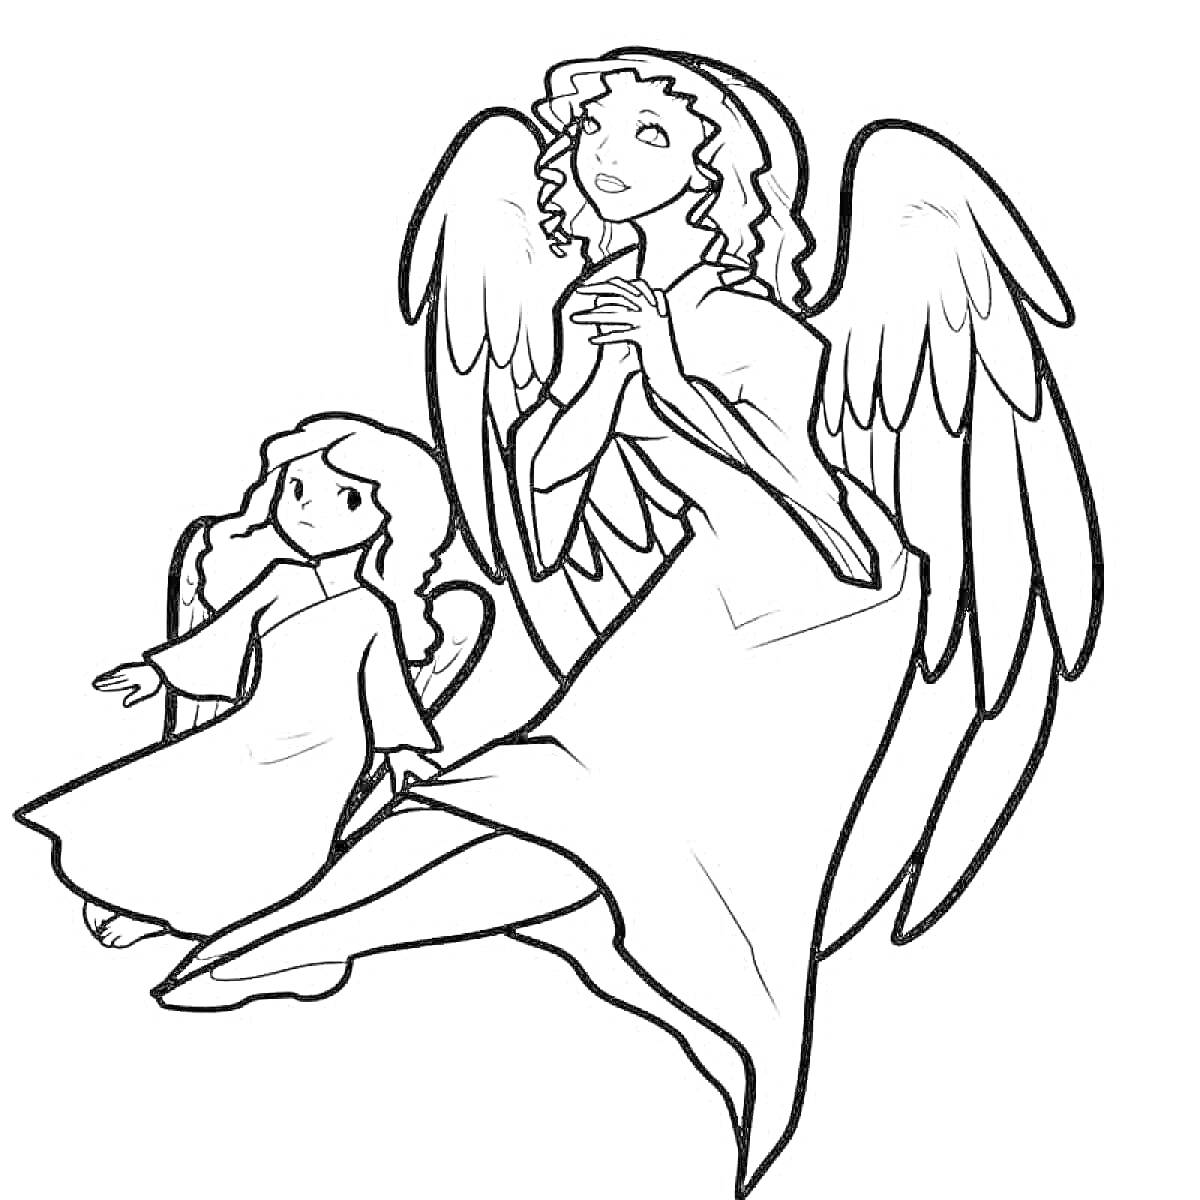 Два ангела - взрослый ангел, сложивший руки в молитве, и маленький ангел, стоящий рядом с протянутой рукой